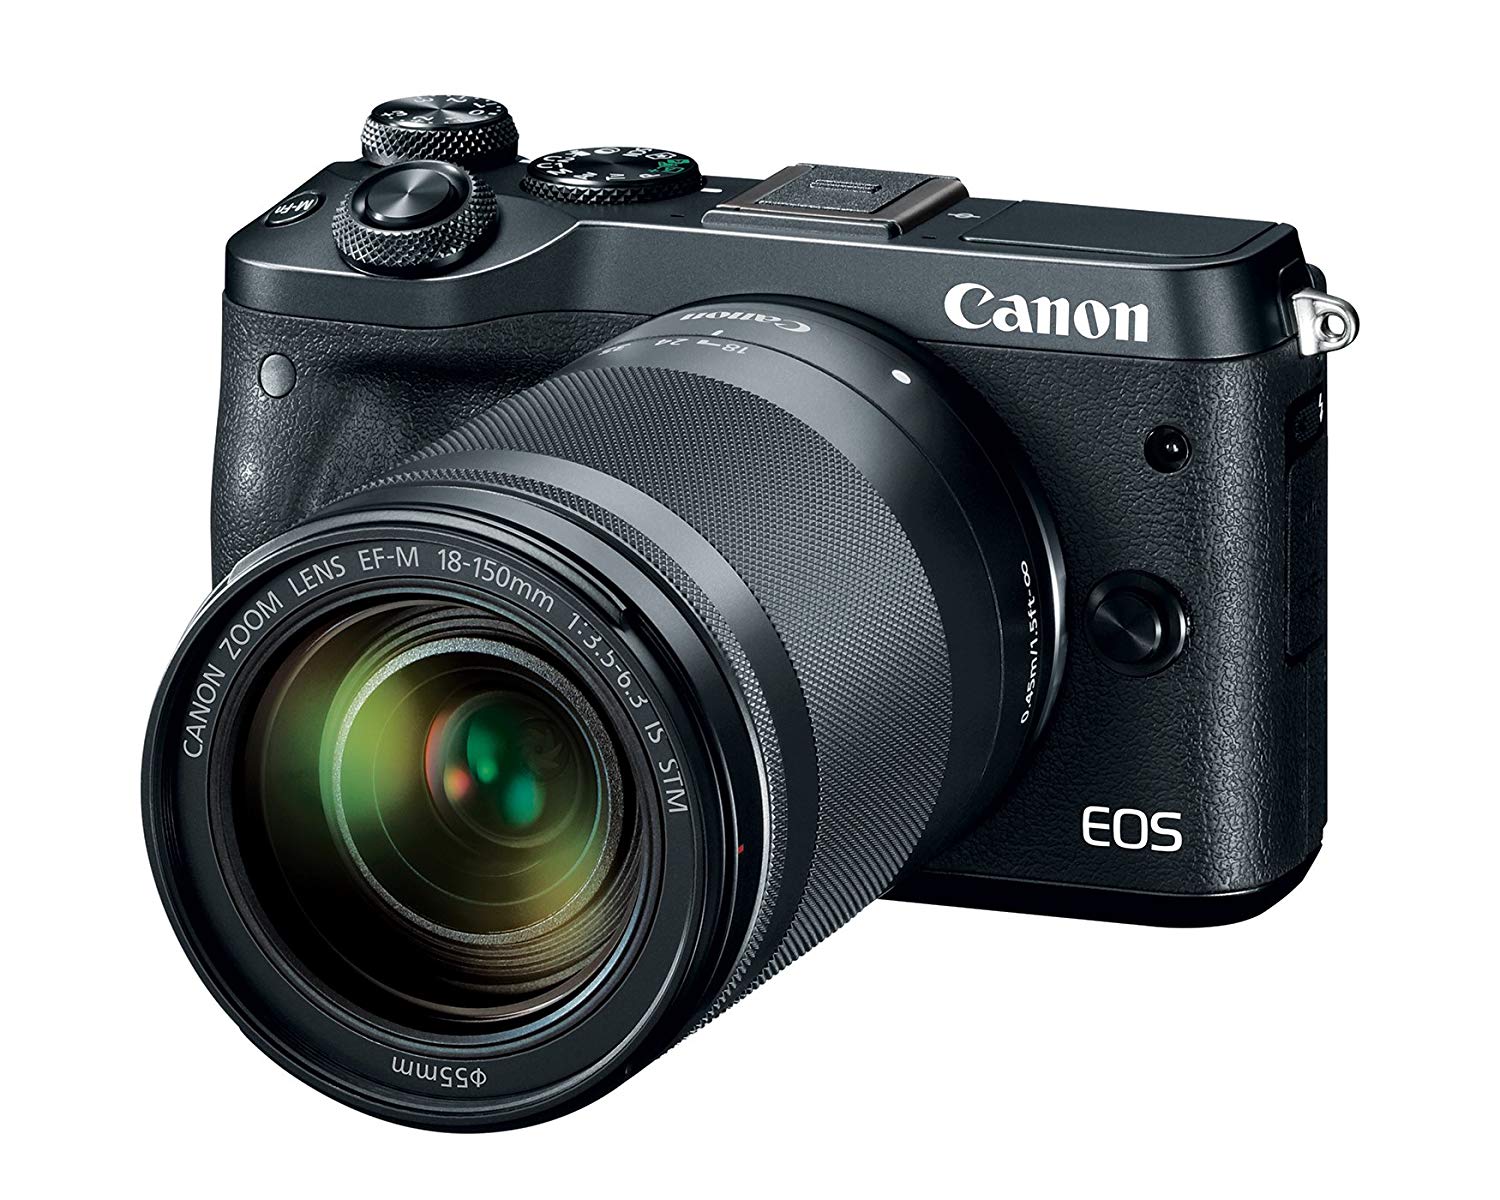 Canon EOS M6 (ब्लैक) 18-150mm f / 3.5-6.3 IS STM किट है